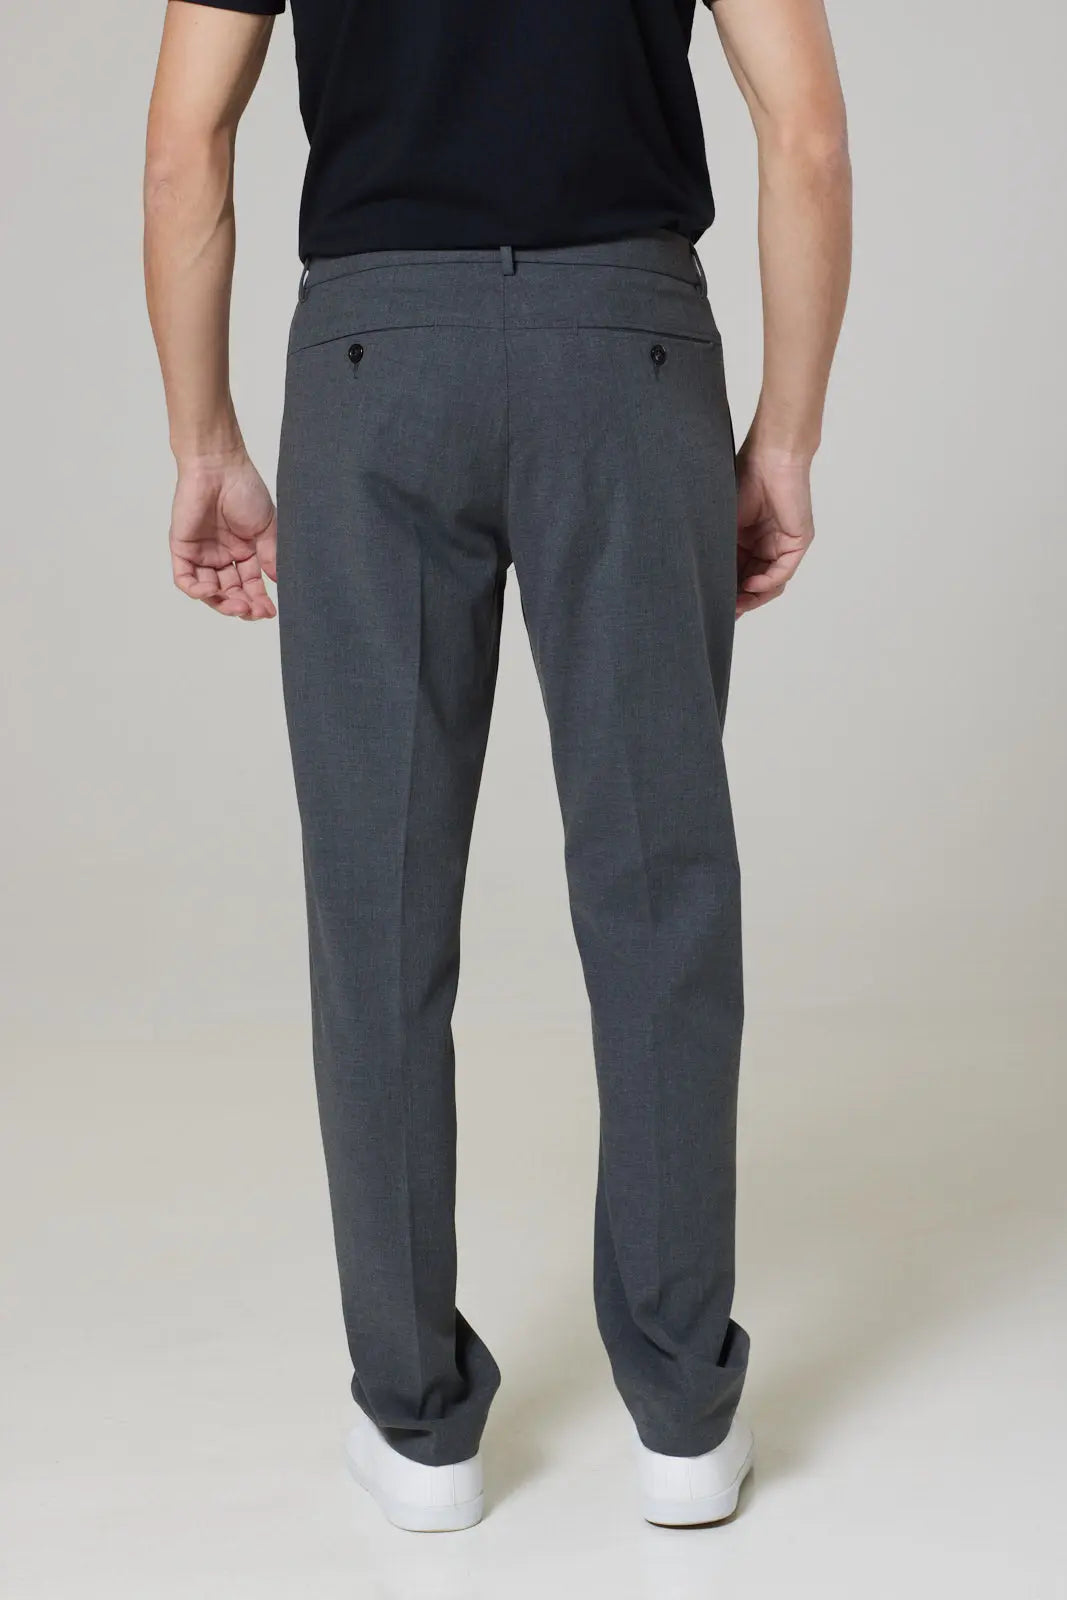 Wentworth Bi Stretch Trouser - Grey - Wear London